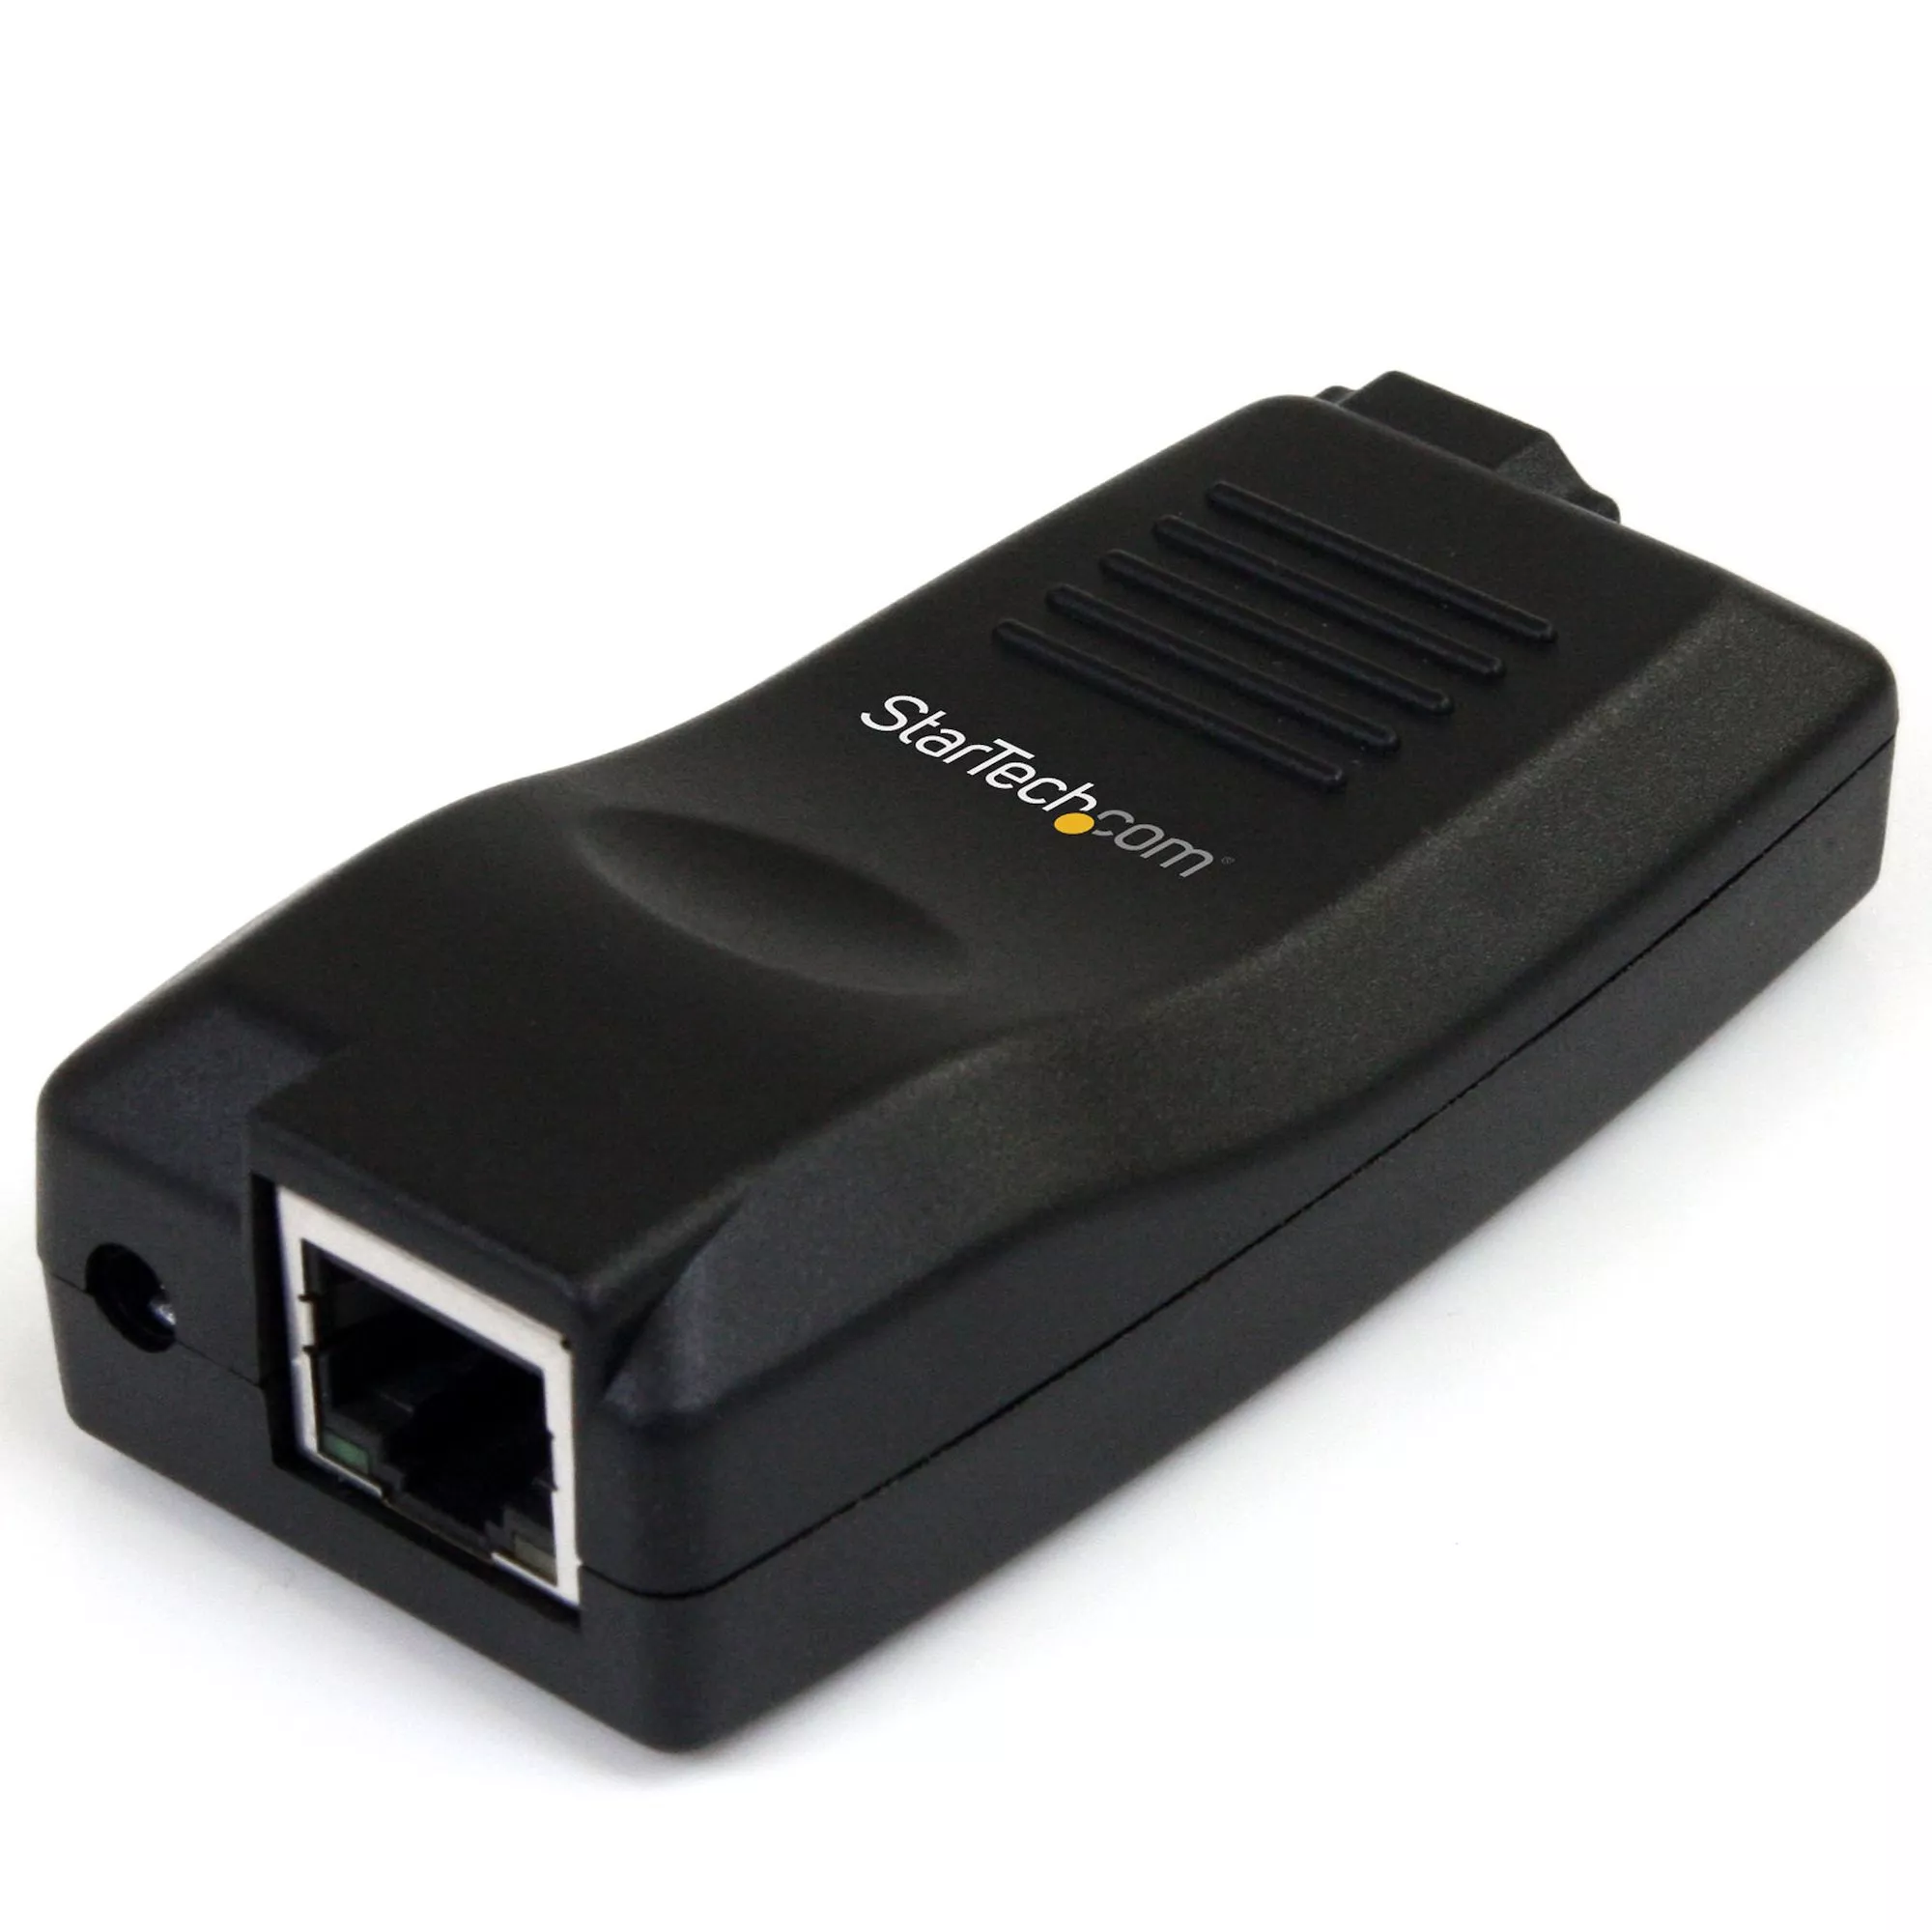 Vente StarTech.com Serveur de périphériques USB sur IP Gigabit au meilleur prix